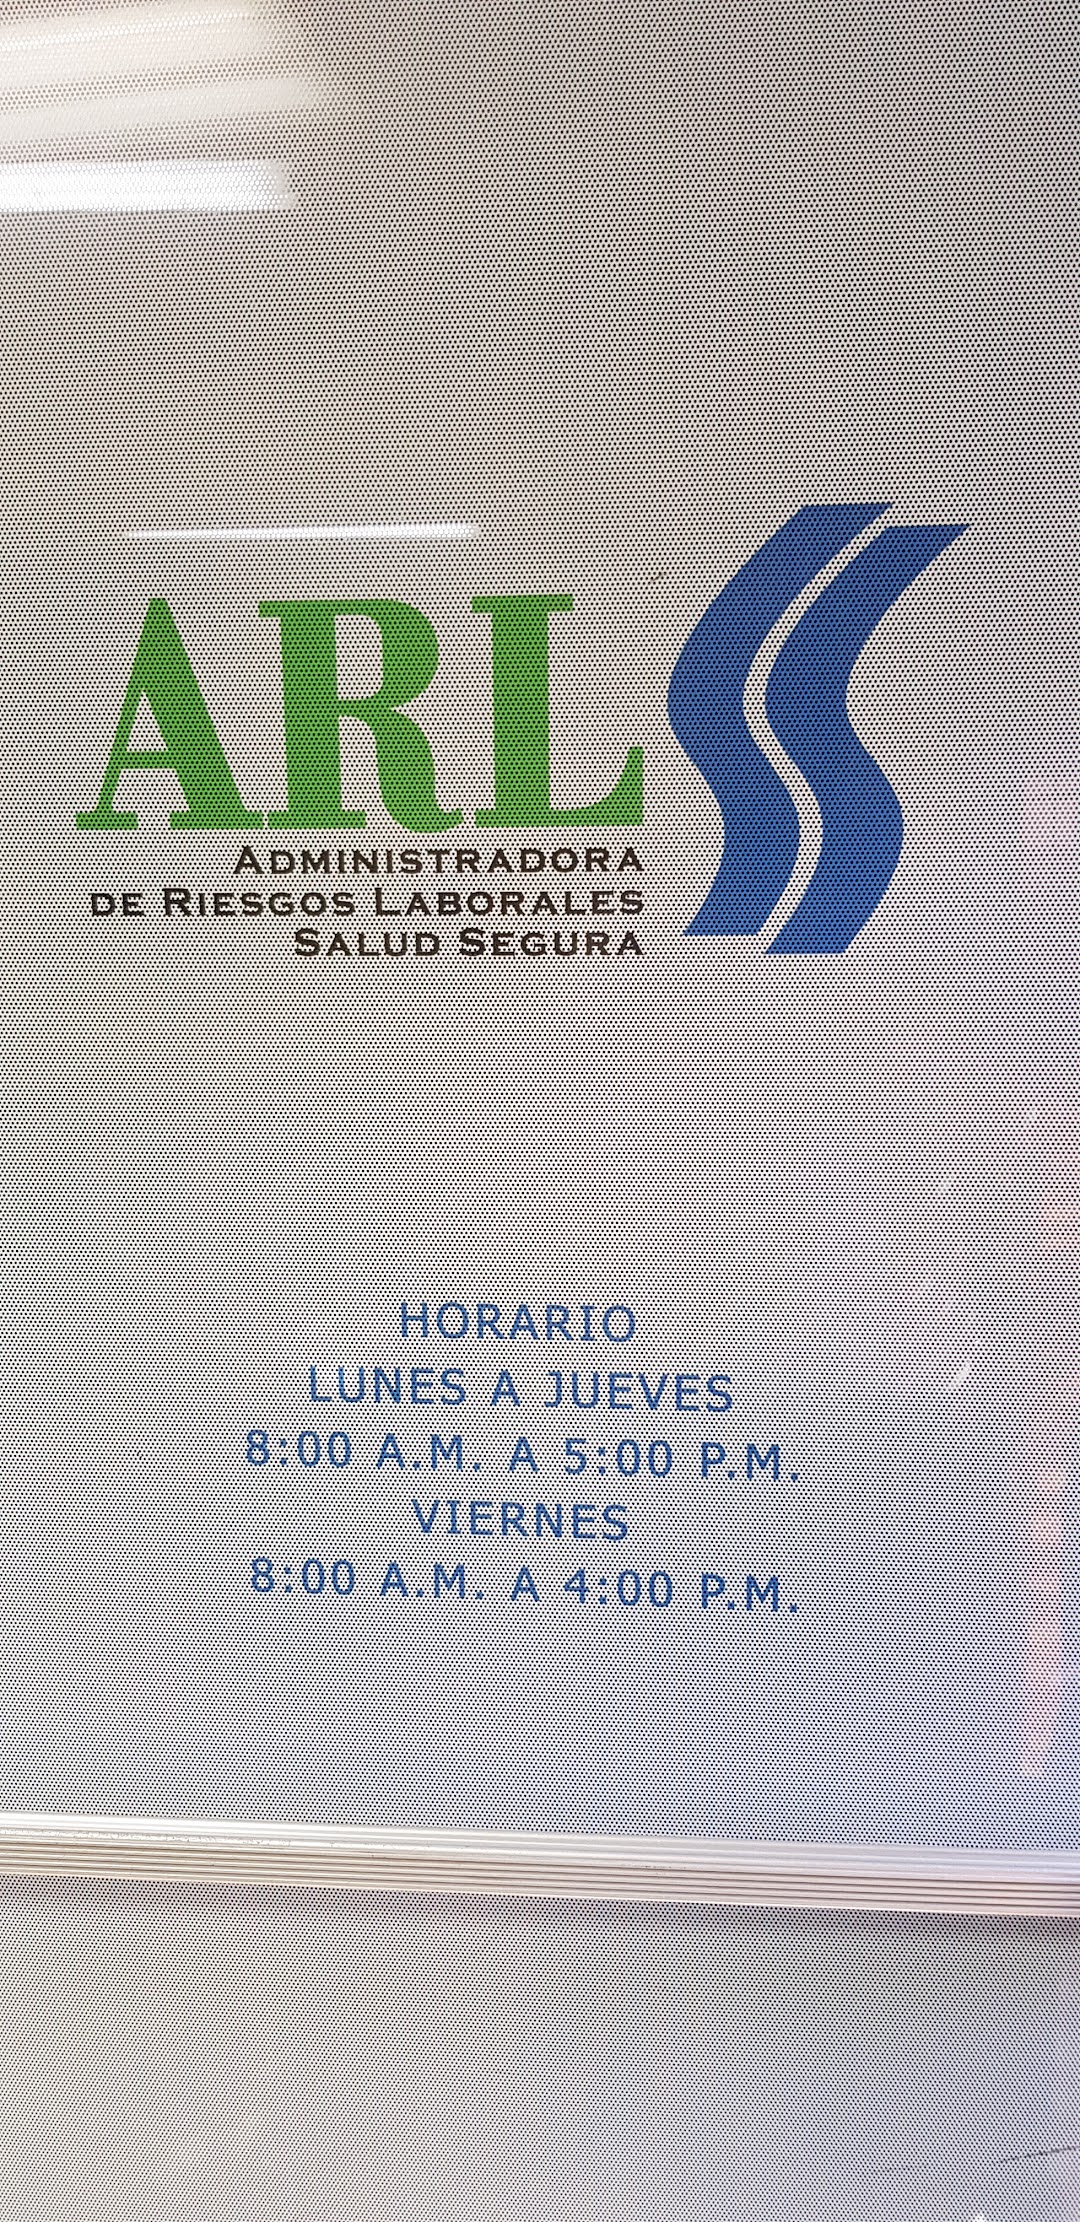 ARL Azua - Administradora de Riesgos Laborales de República Dominicana.